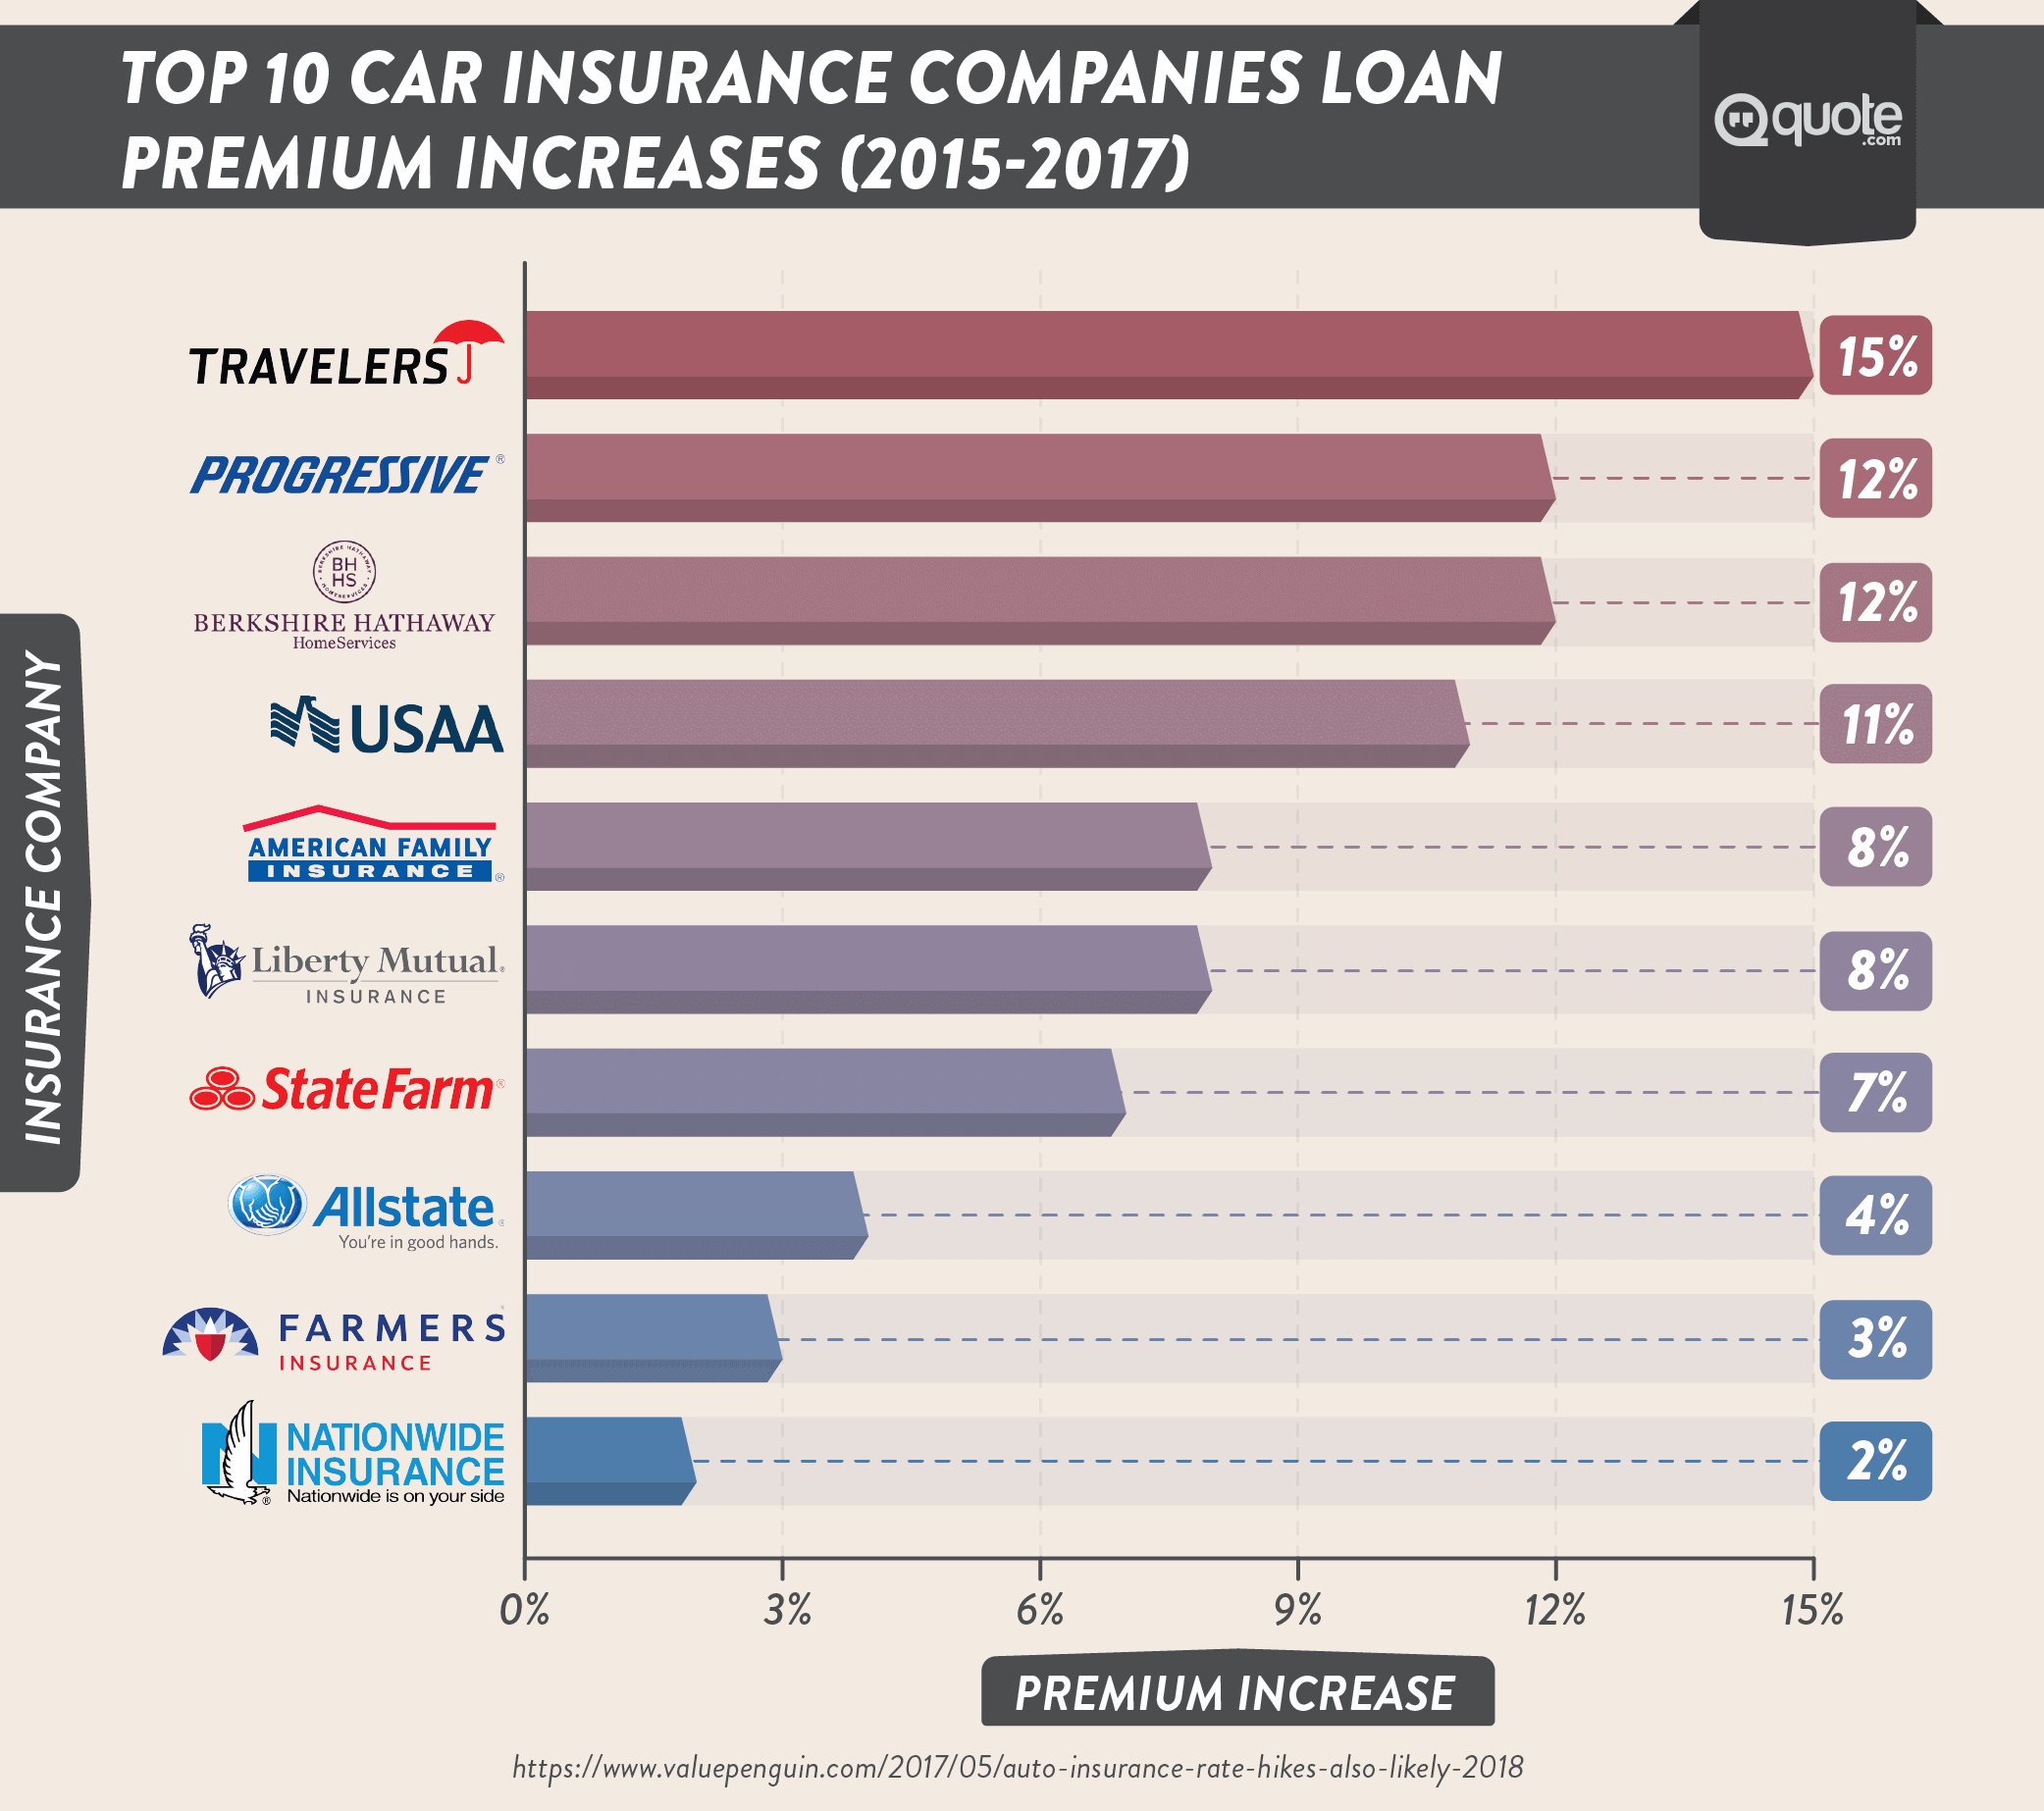 Top 10 Car Insurance Companies' Loan Premium Increases